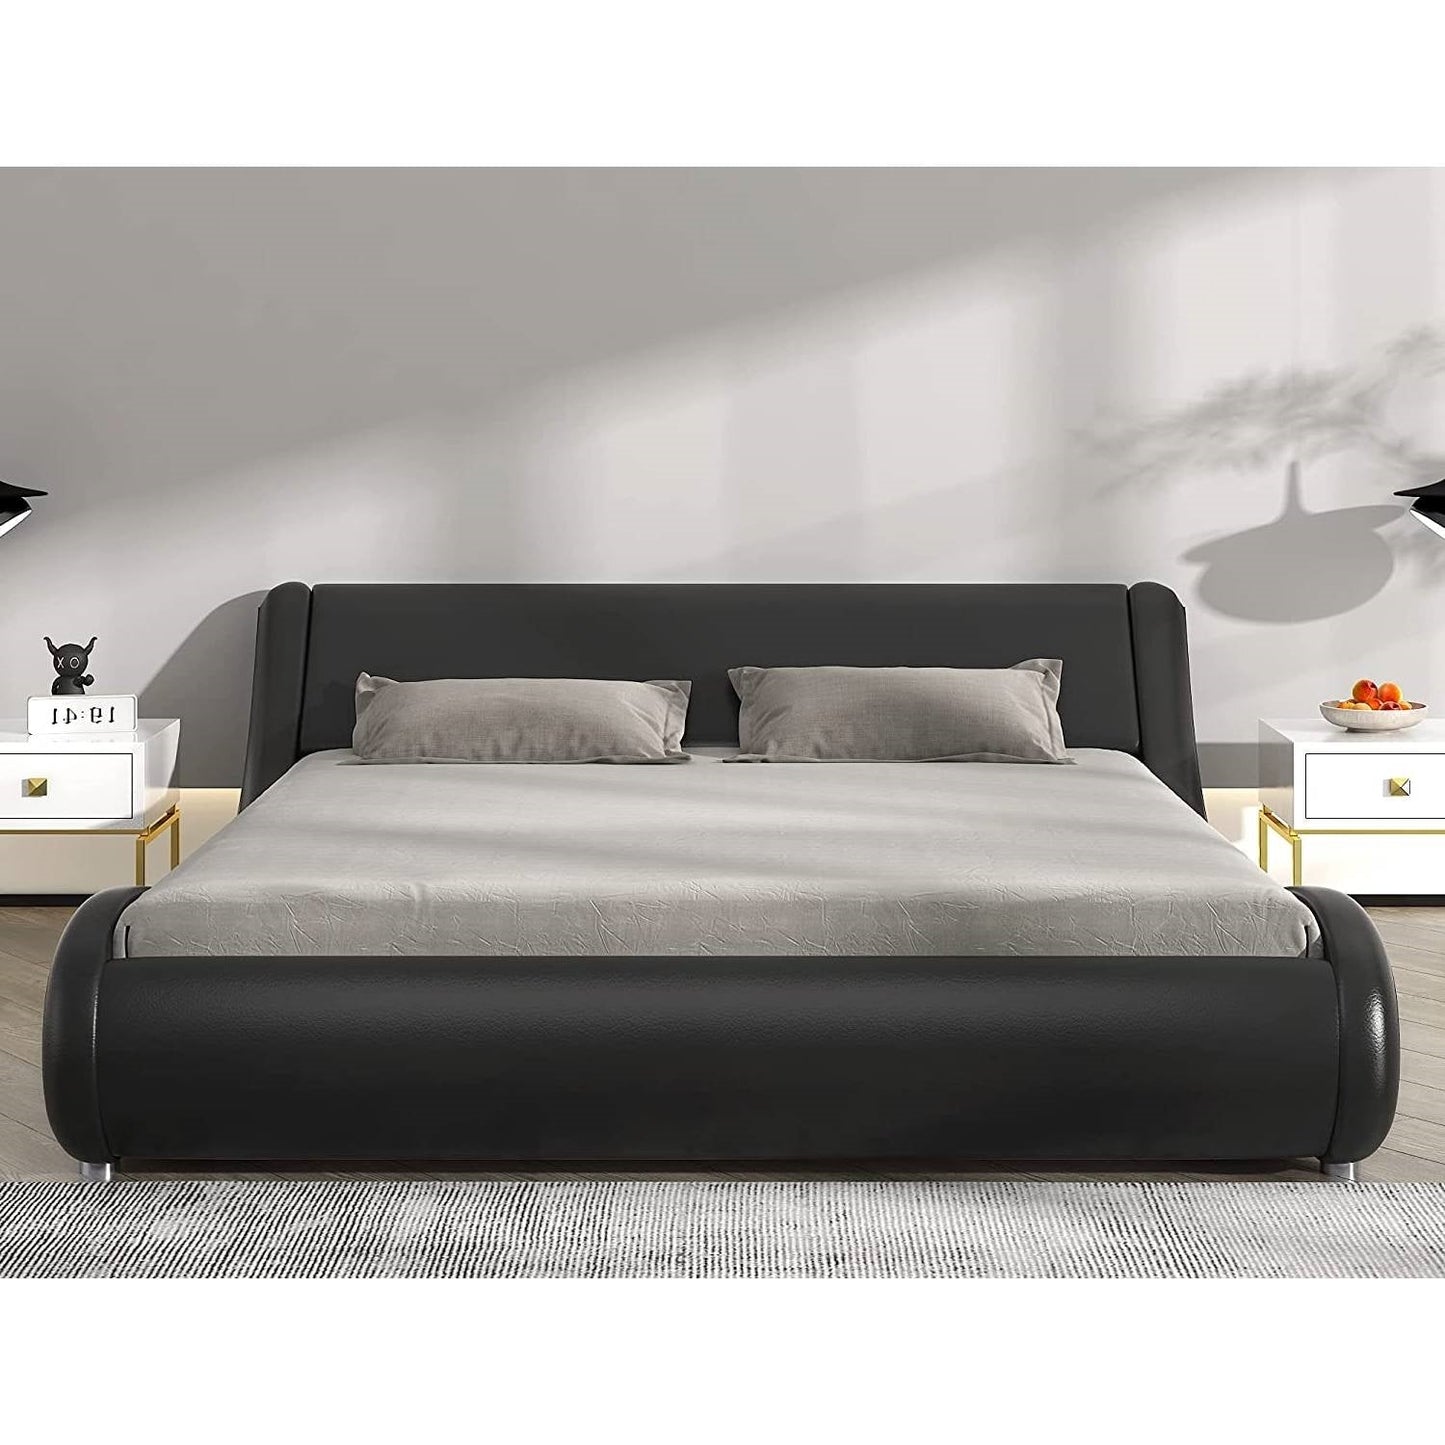 Bedroom > Bed Frames > Platform Beds - Queen Modern Black Faux Leather Upholstered Platform Bed Frame With Headboard